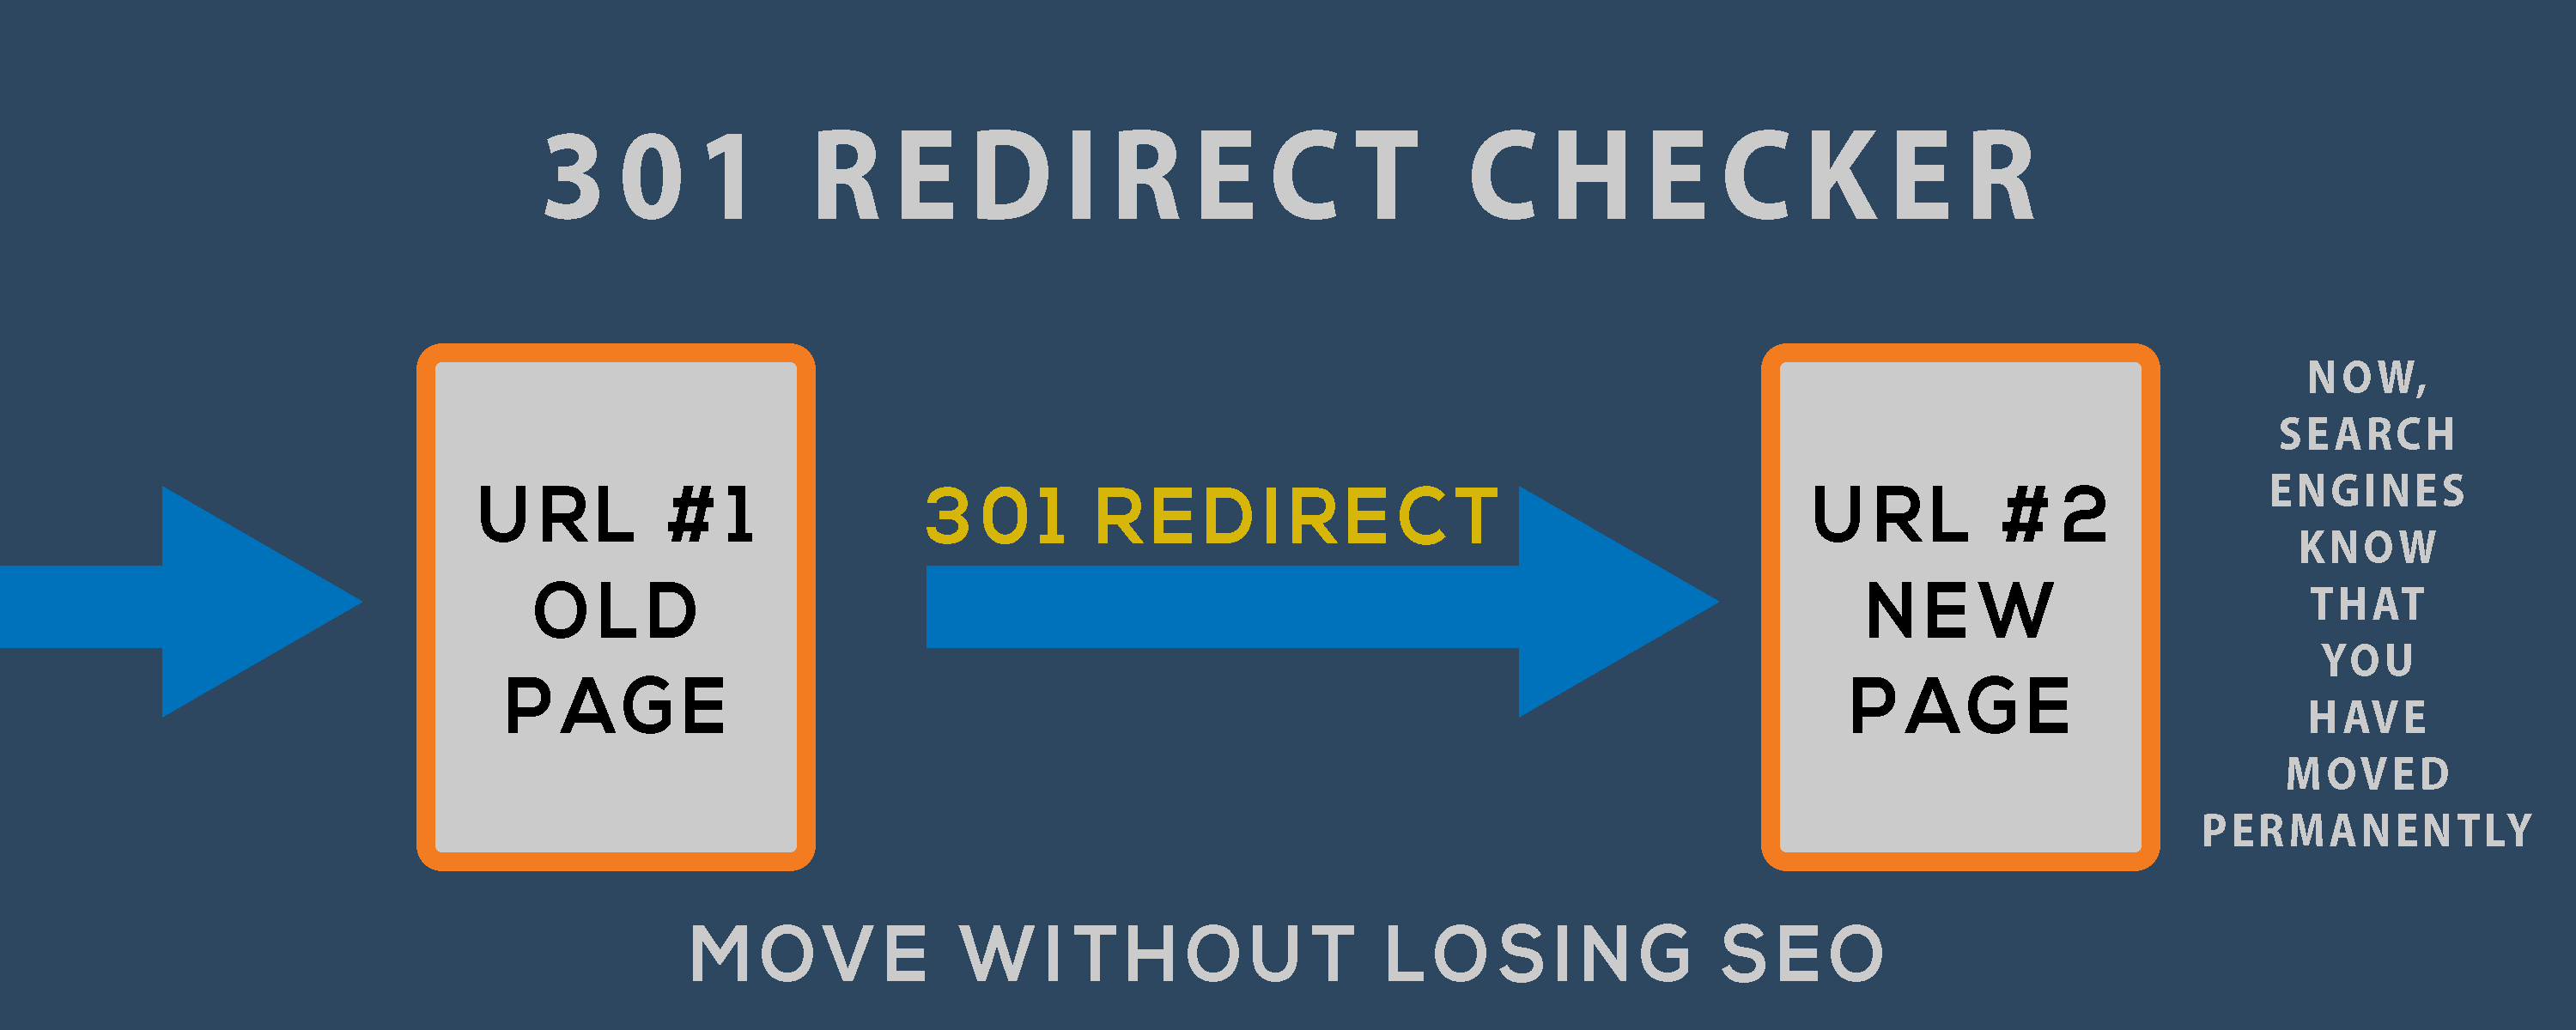 301 Redirect Checker